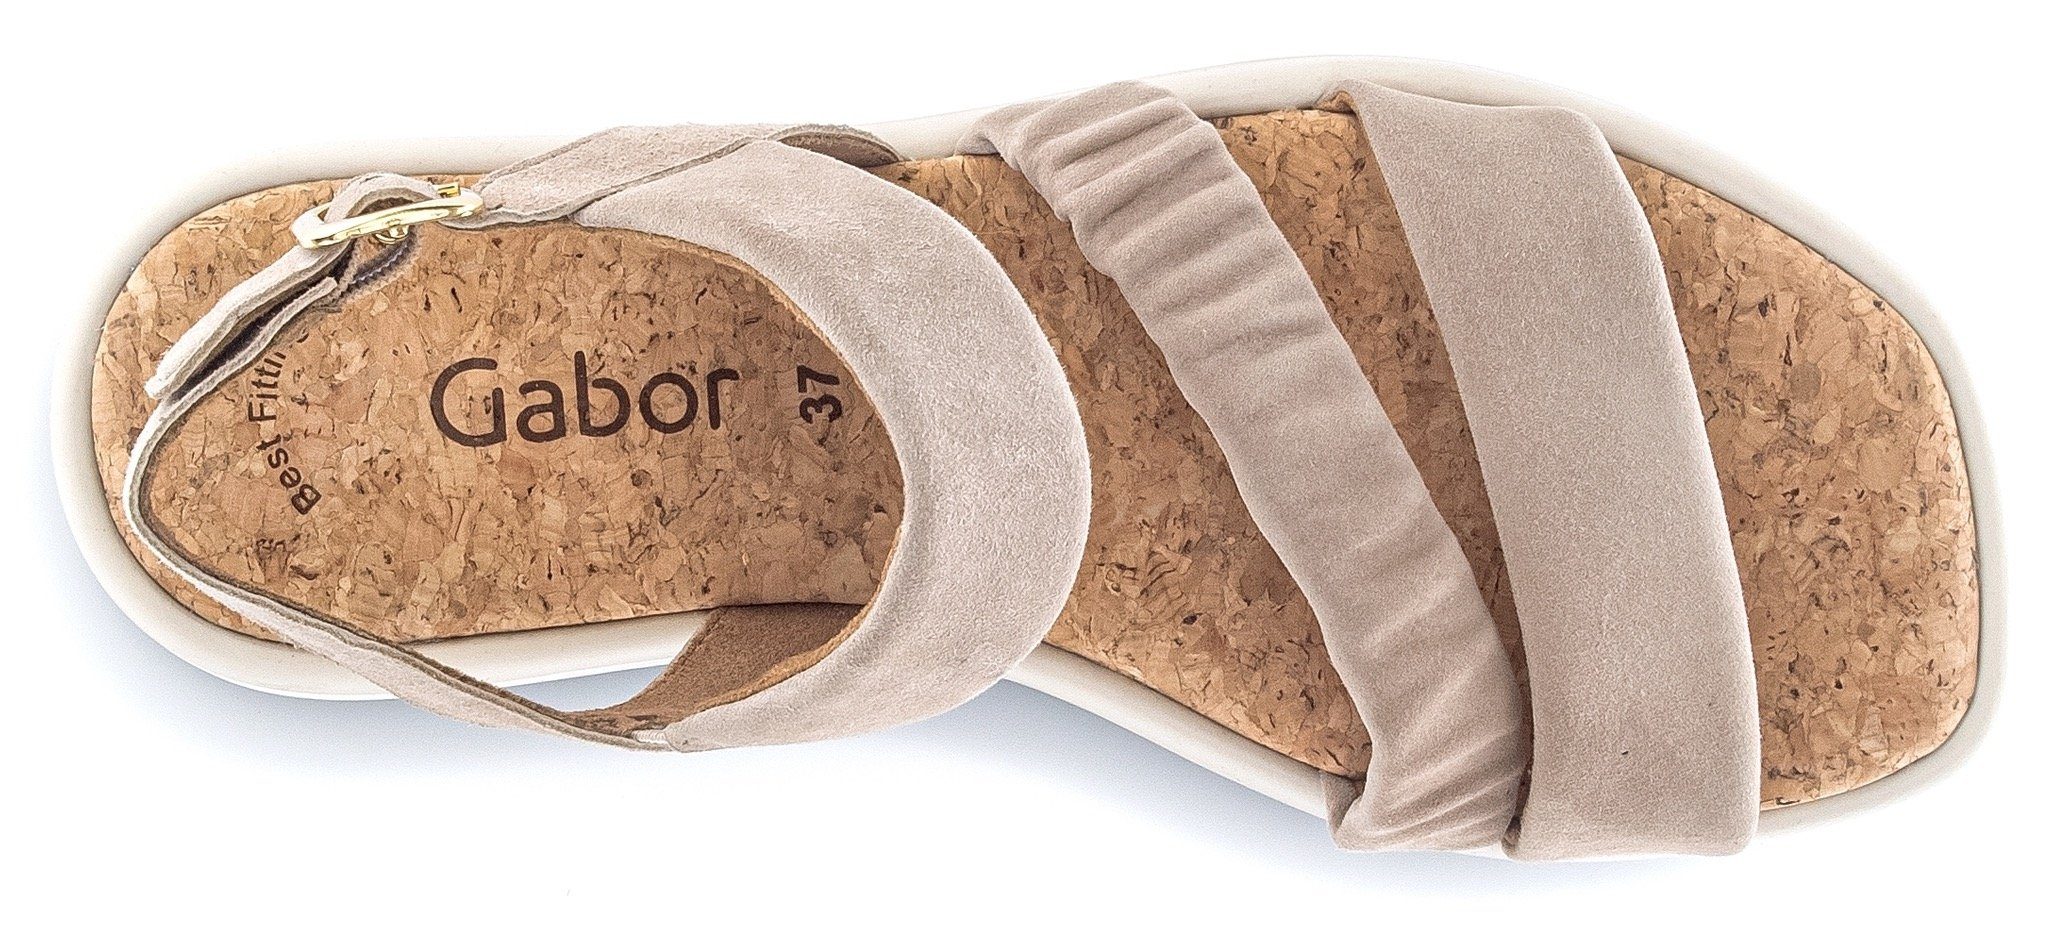 Gabor Best hellbeige Fitting Ausstattung mit Sandalette